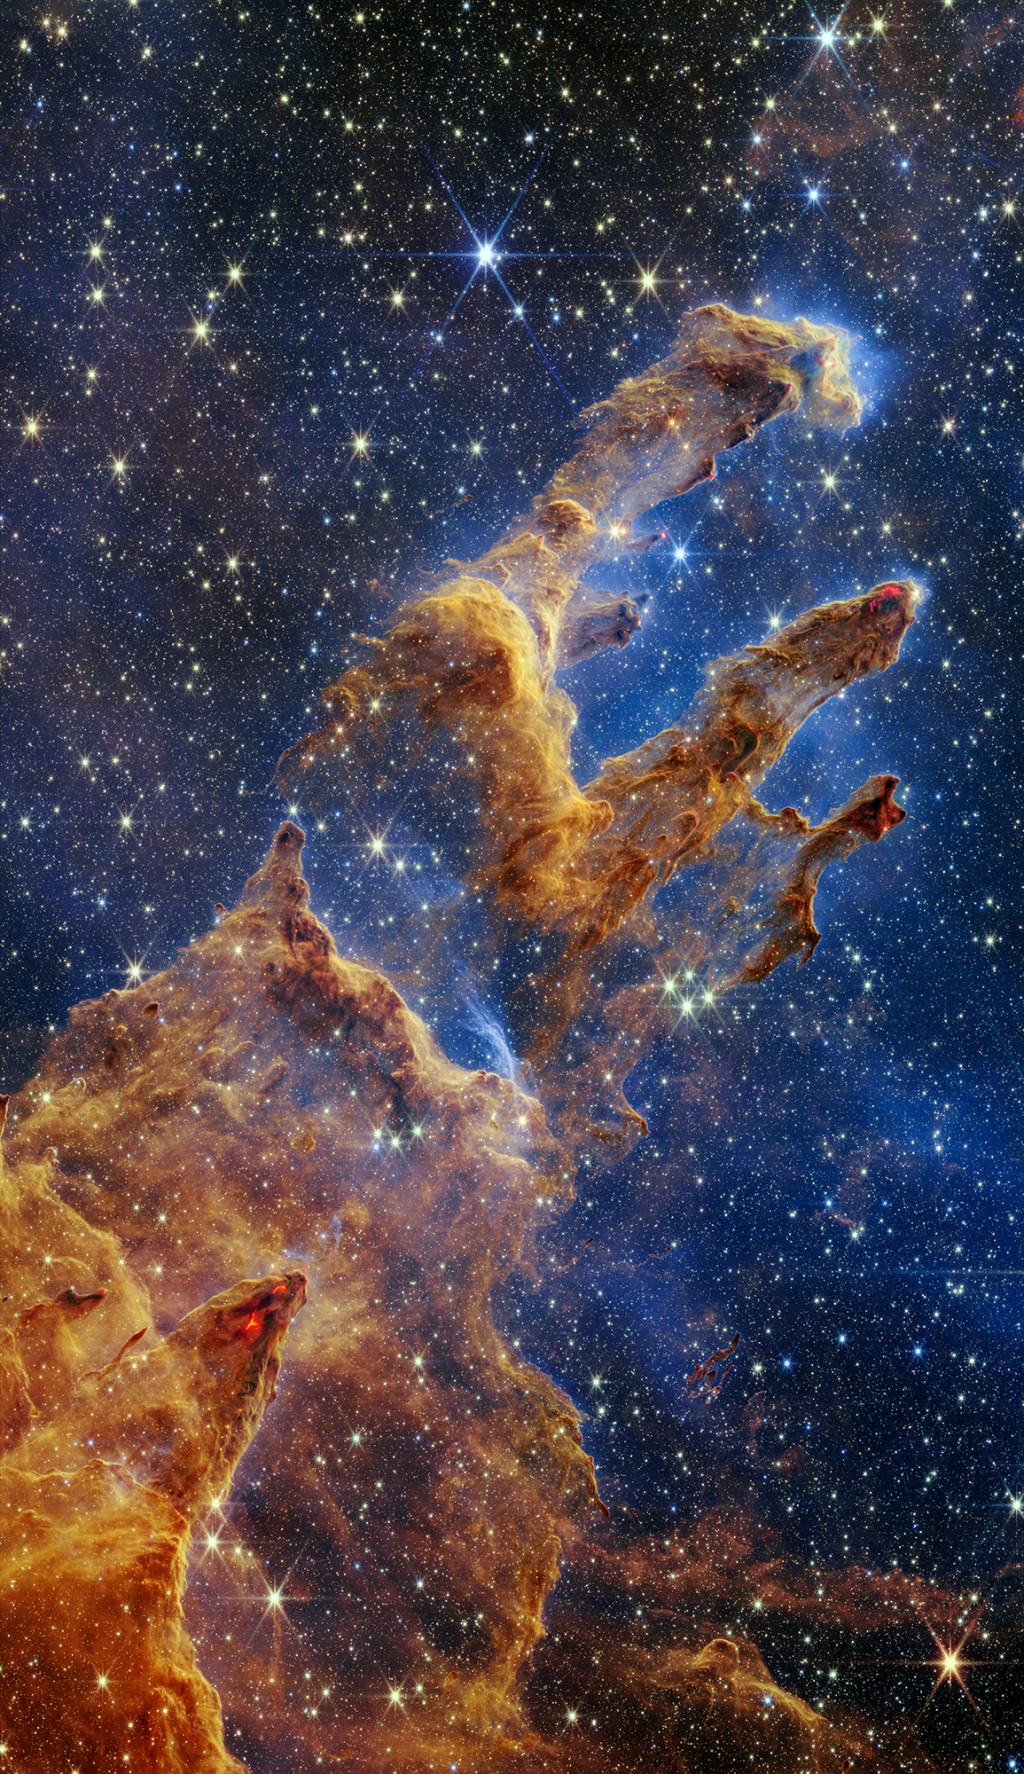 韋伯太空望遠鏡拍攝的「創生之柱」圖像。 NASA